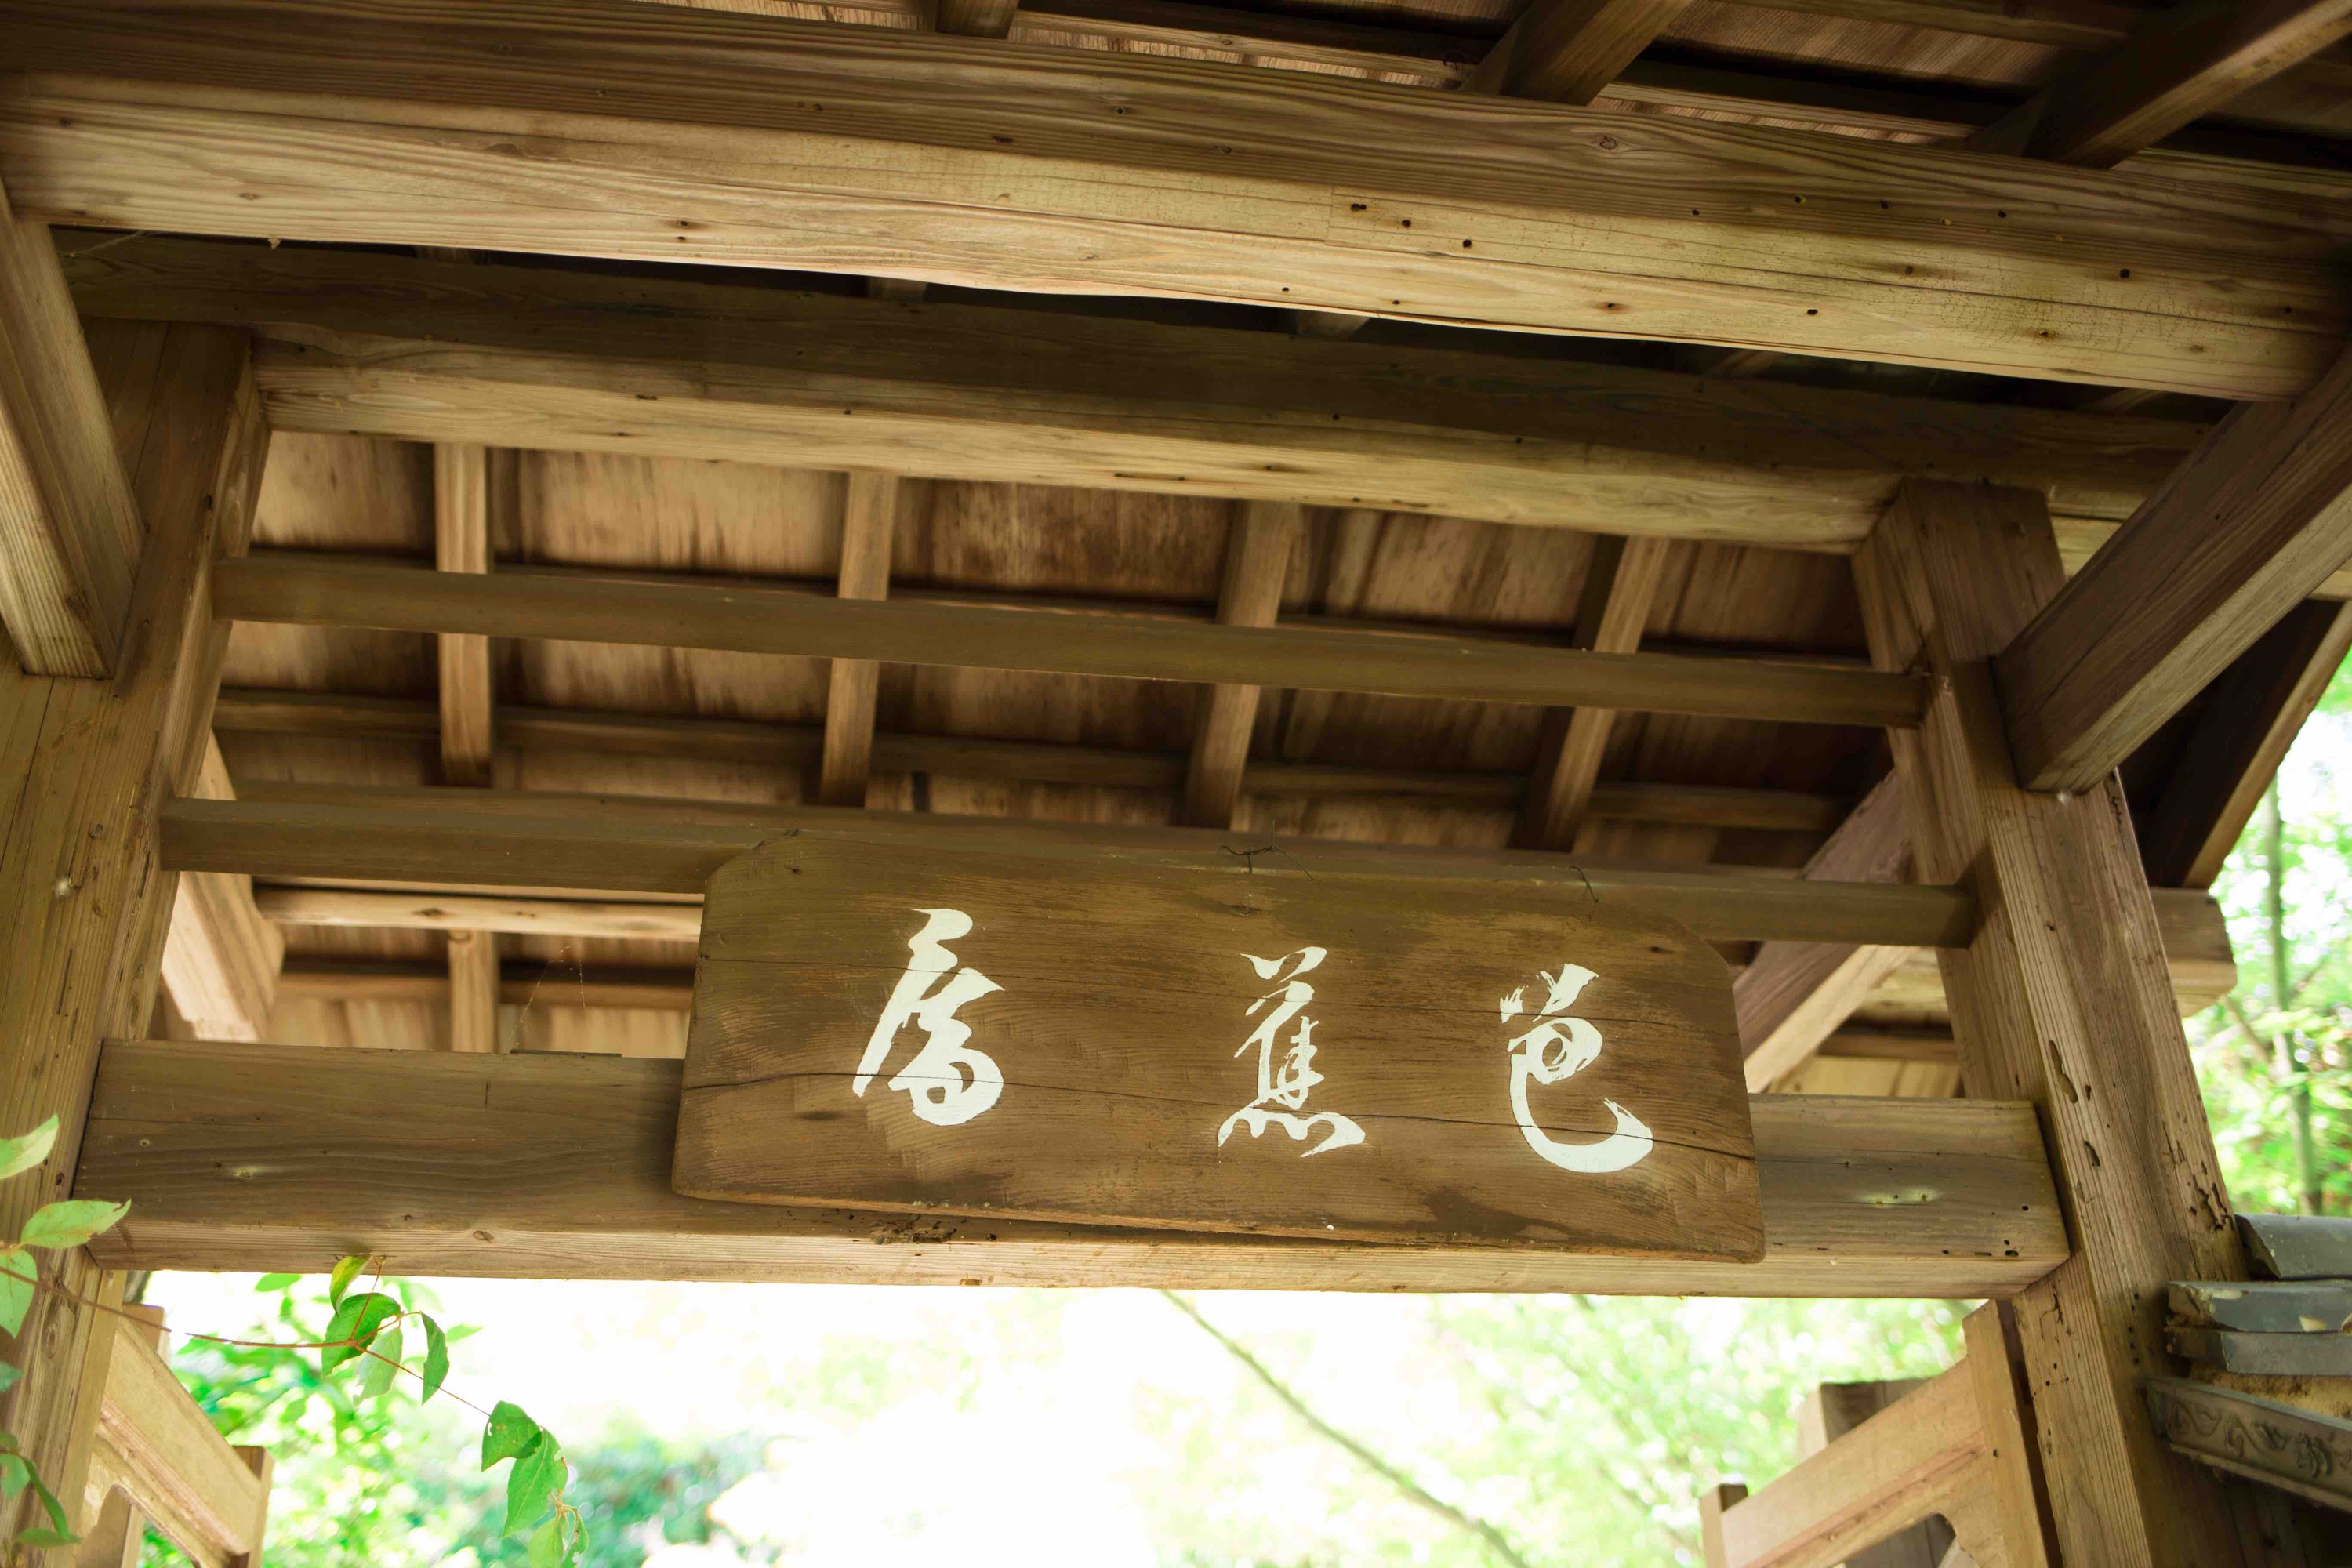 新緑に包まれる金福寺の「芭蕉庵」と書かれた門